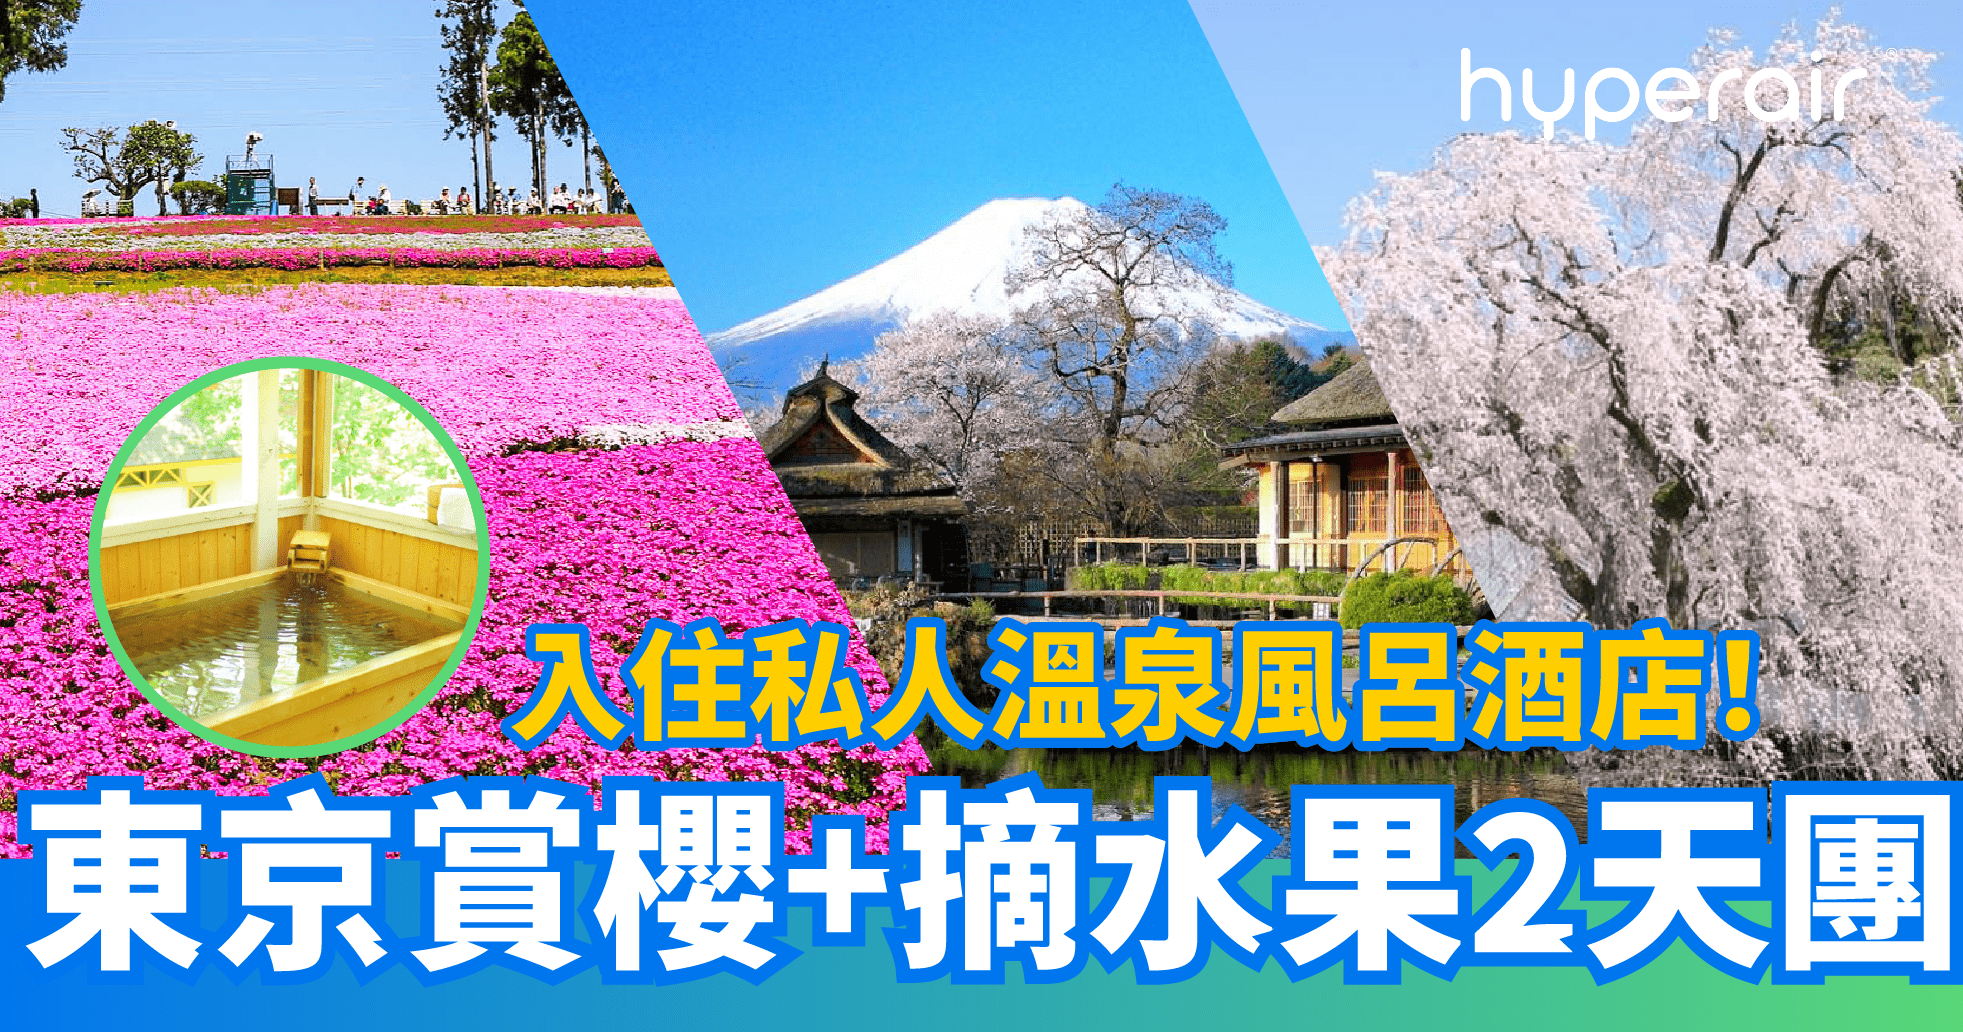 不能不去的賞櫻、溫泉、美食、摘水果東京2天團 到訪6大賞櫻名所